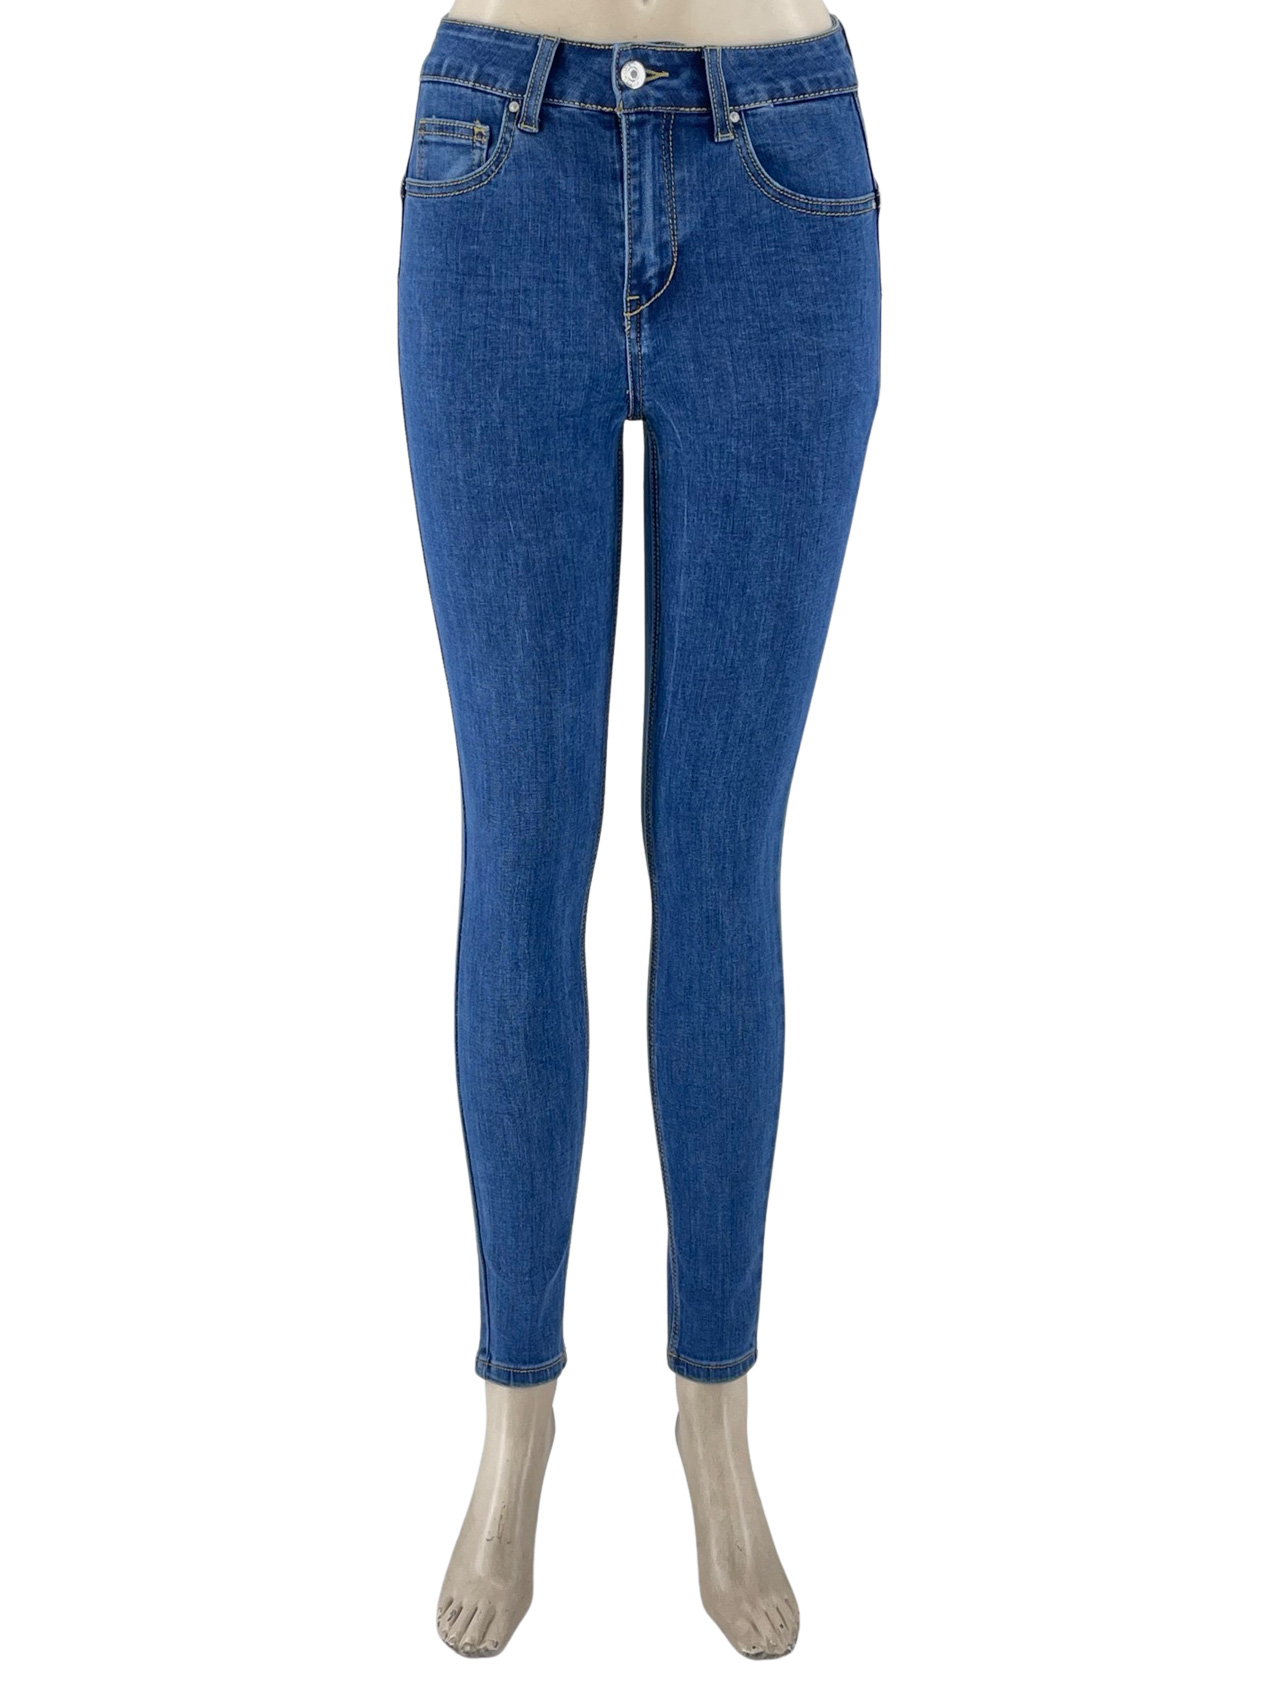 Pants women's jeans push-up code H1770